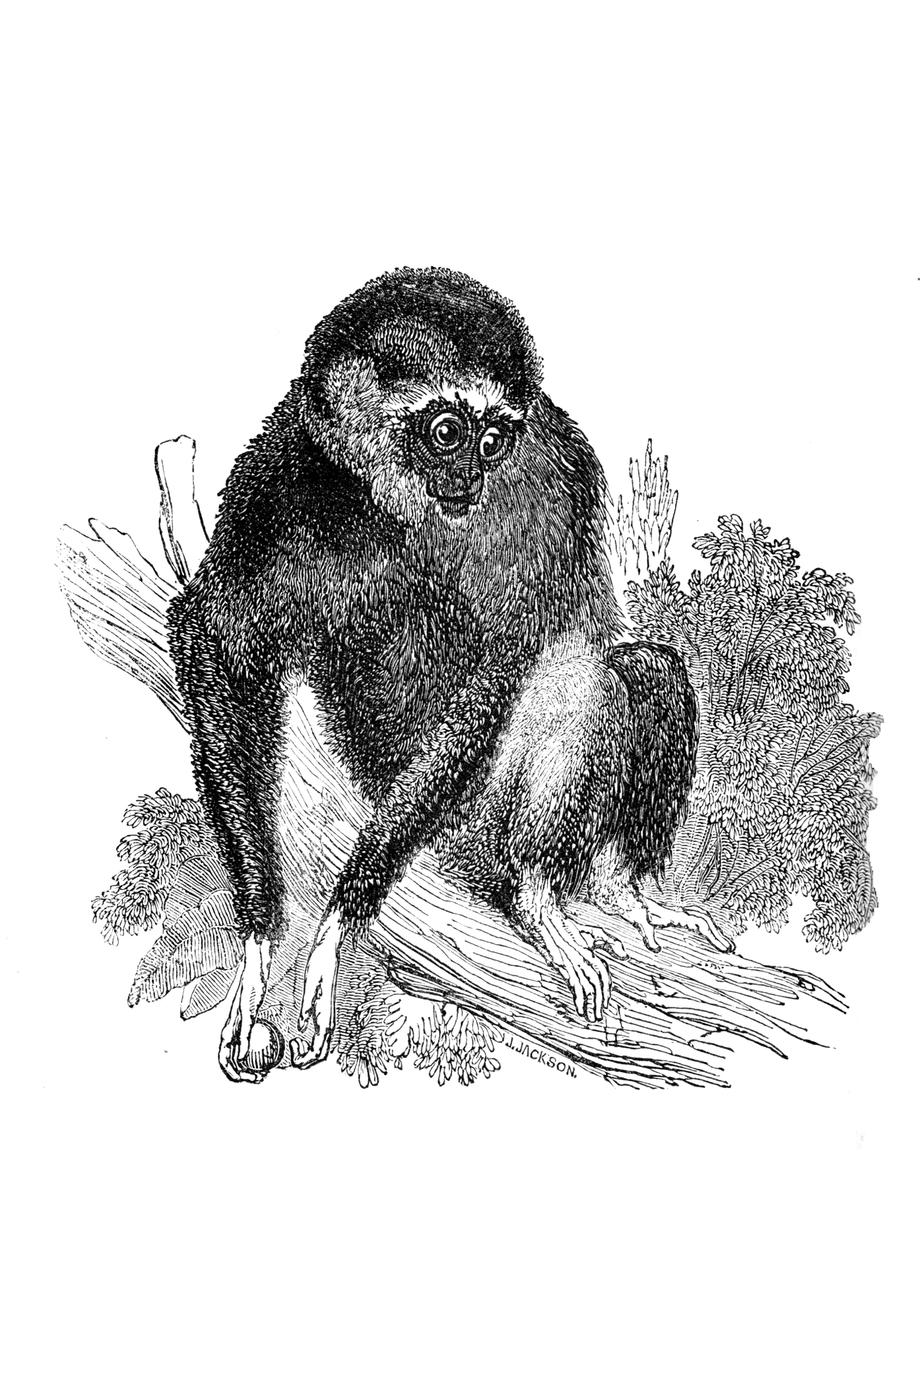 The White-handed Gibbon (Hylobates lar)